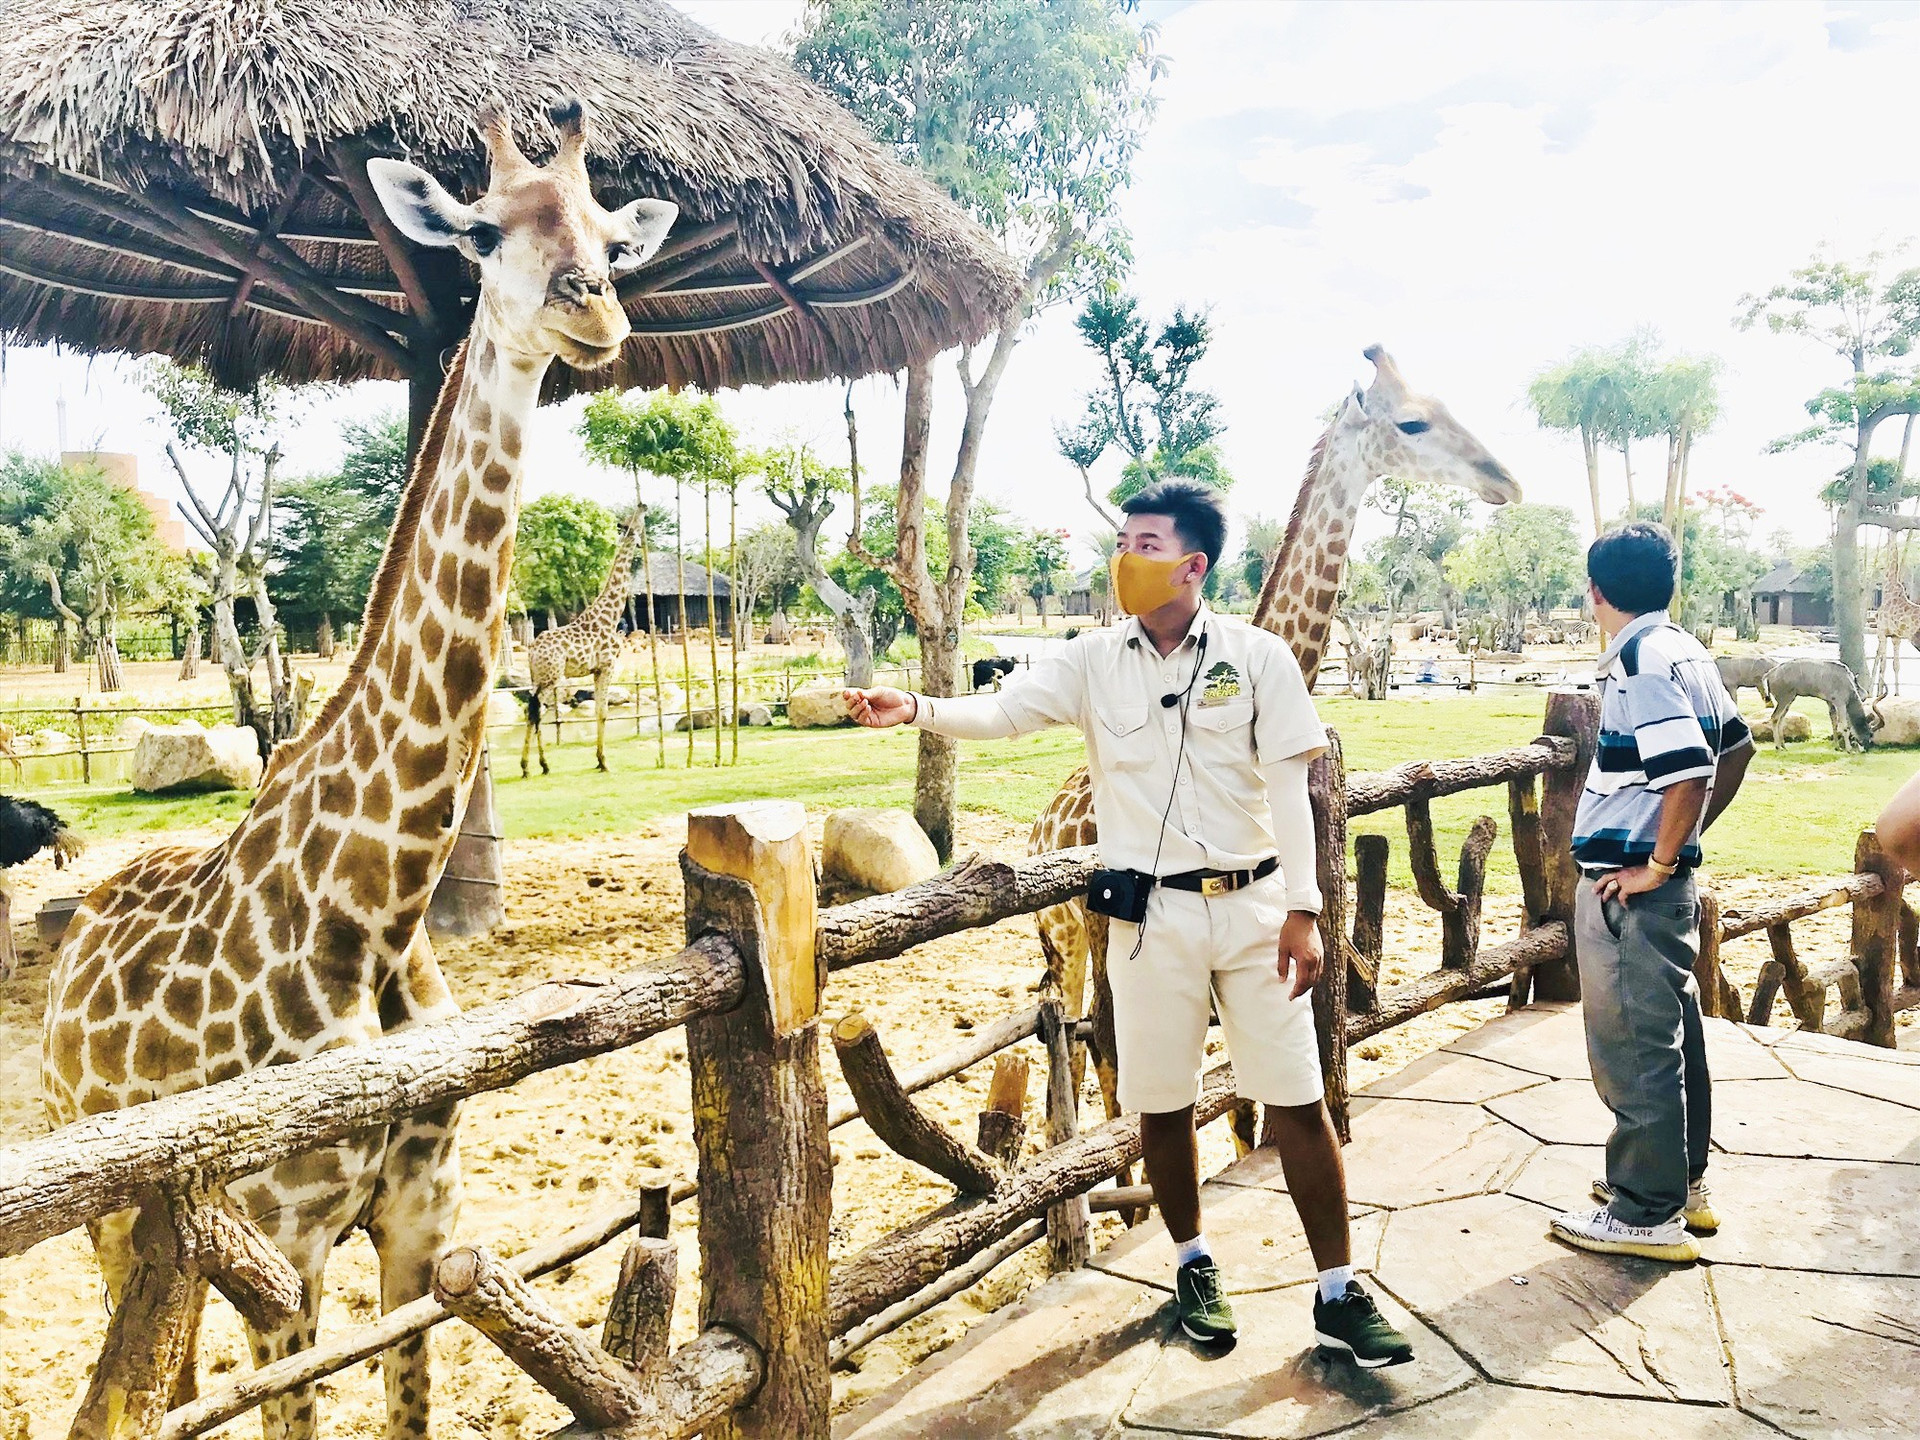 Khu bảo tồn động vật bán hoang dã ở VinWonders Nam Hội An rất được du khách yêu thích. Ảnh: Q.T